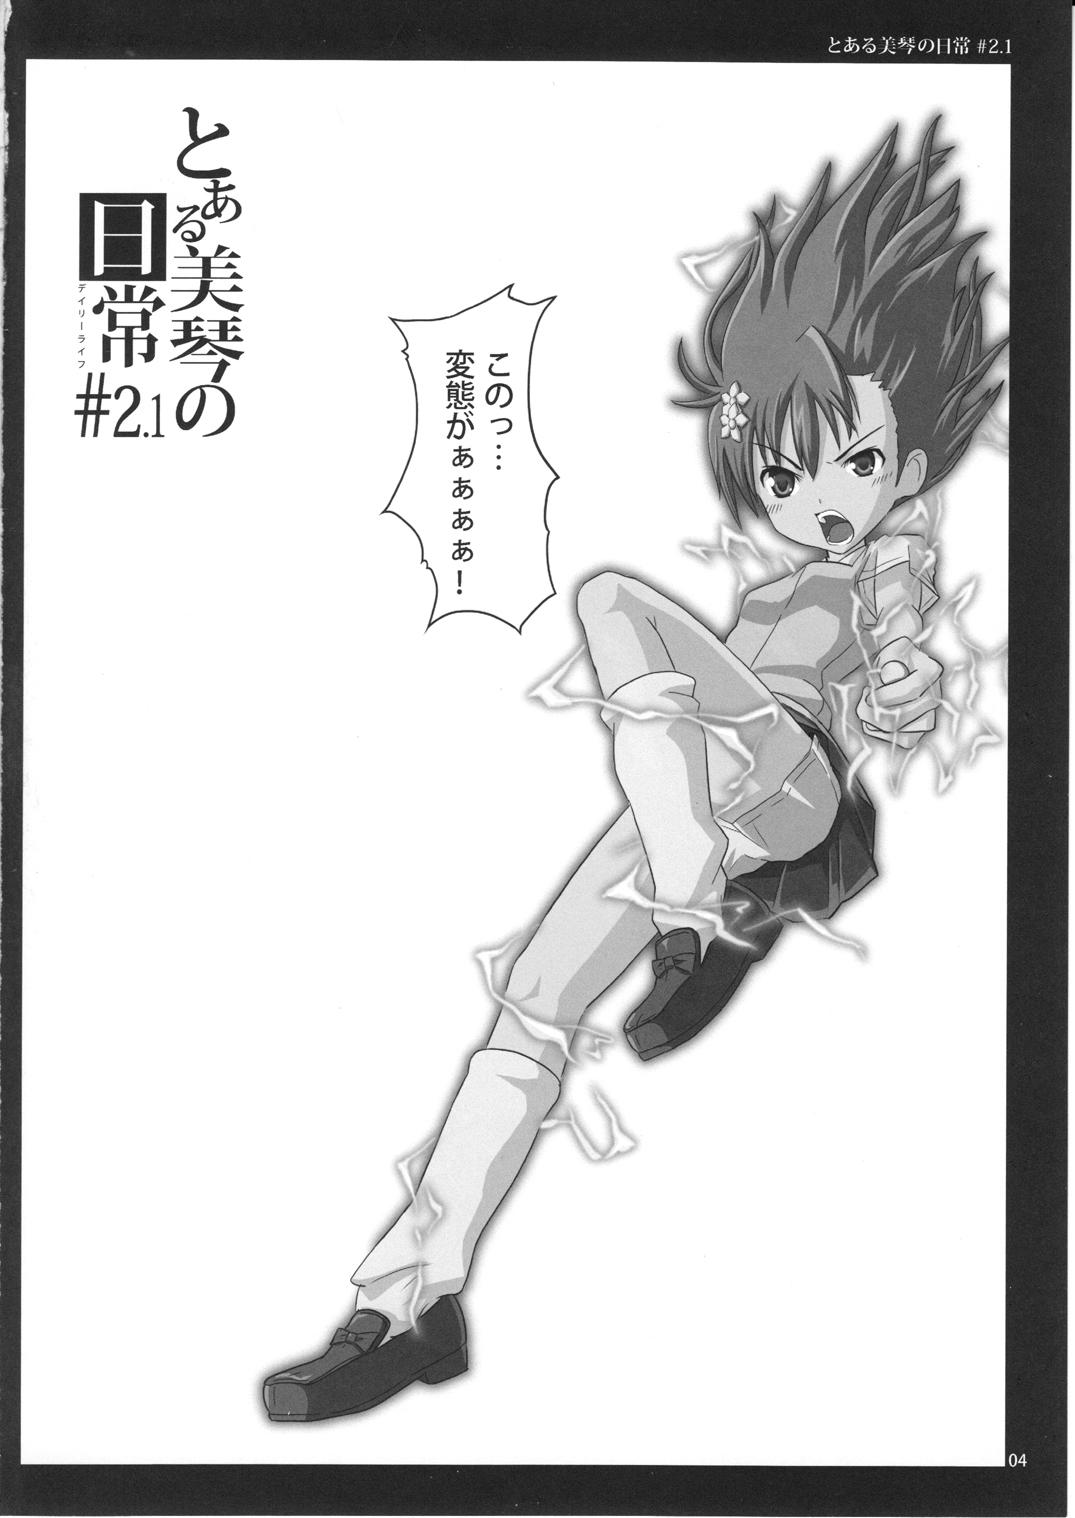 Analfucking To Aru Mikoto no Nichijou 2.1 - Toaru kagaku no railgun Casal - Page 4